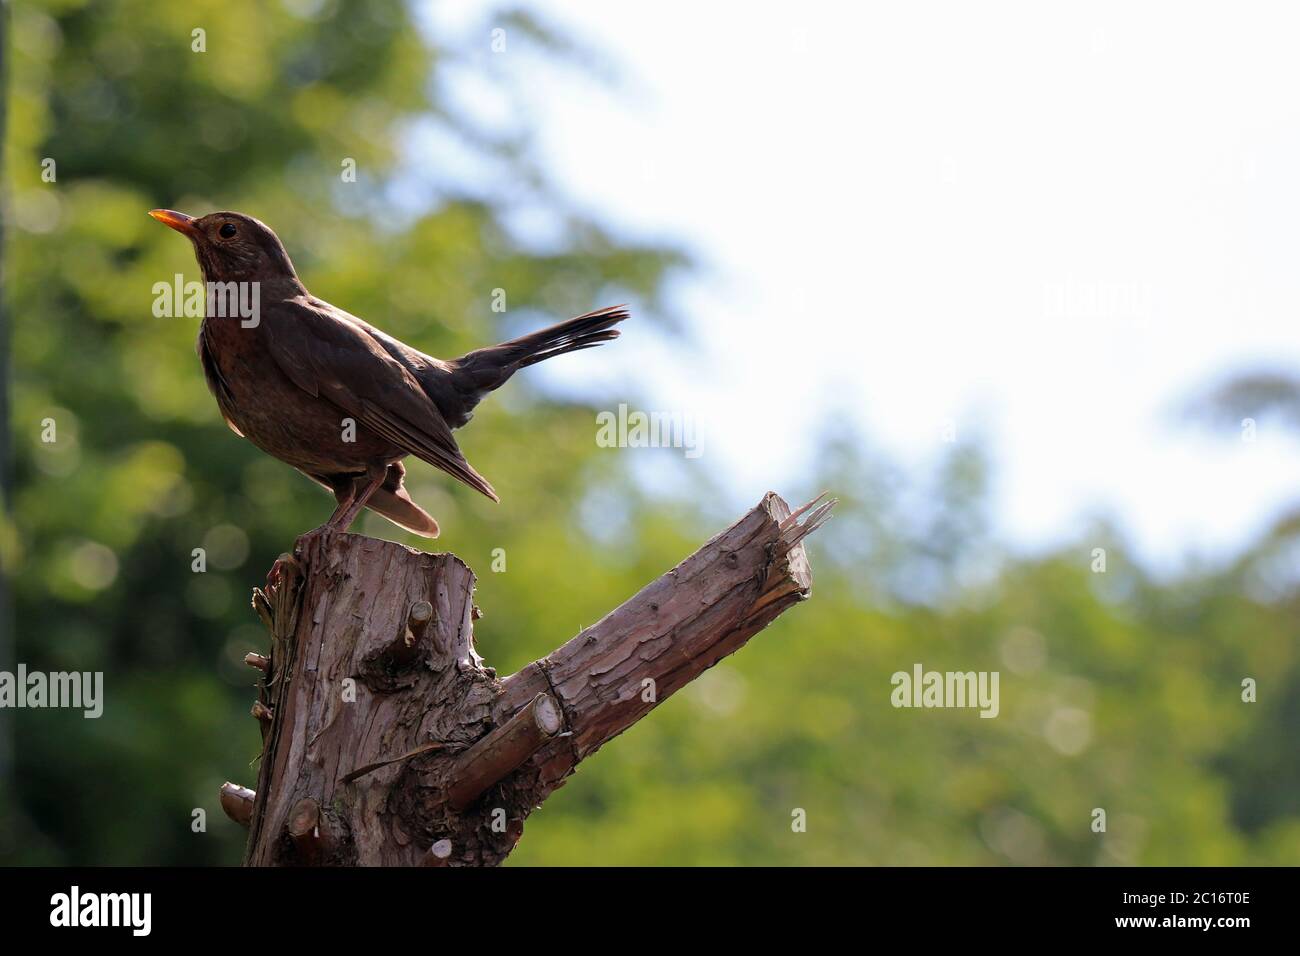 Eurasian blackbird on a tree stump Stock Photo